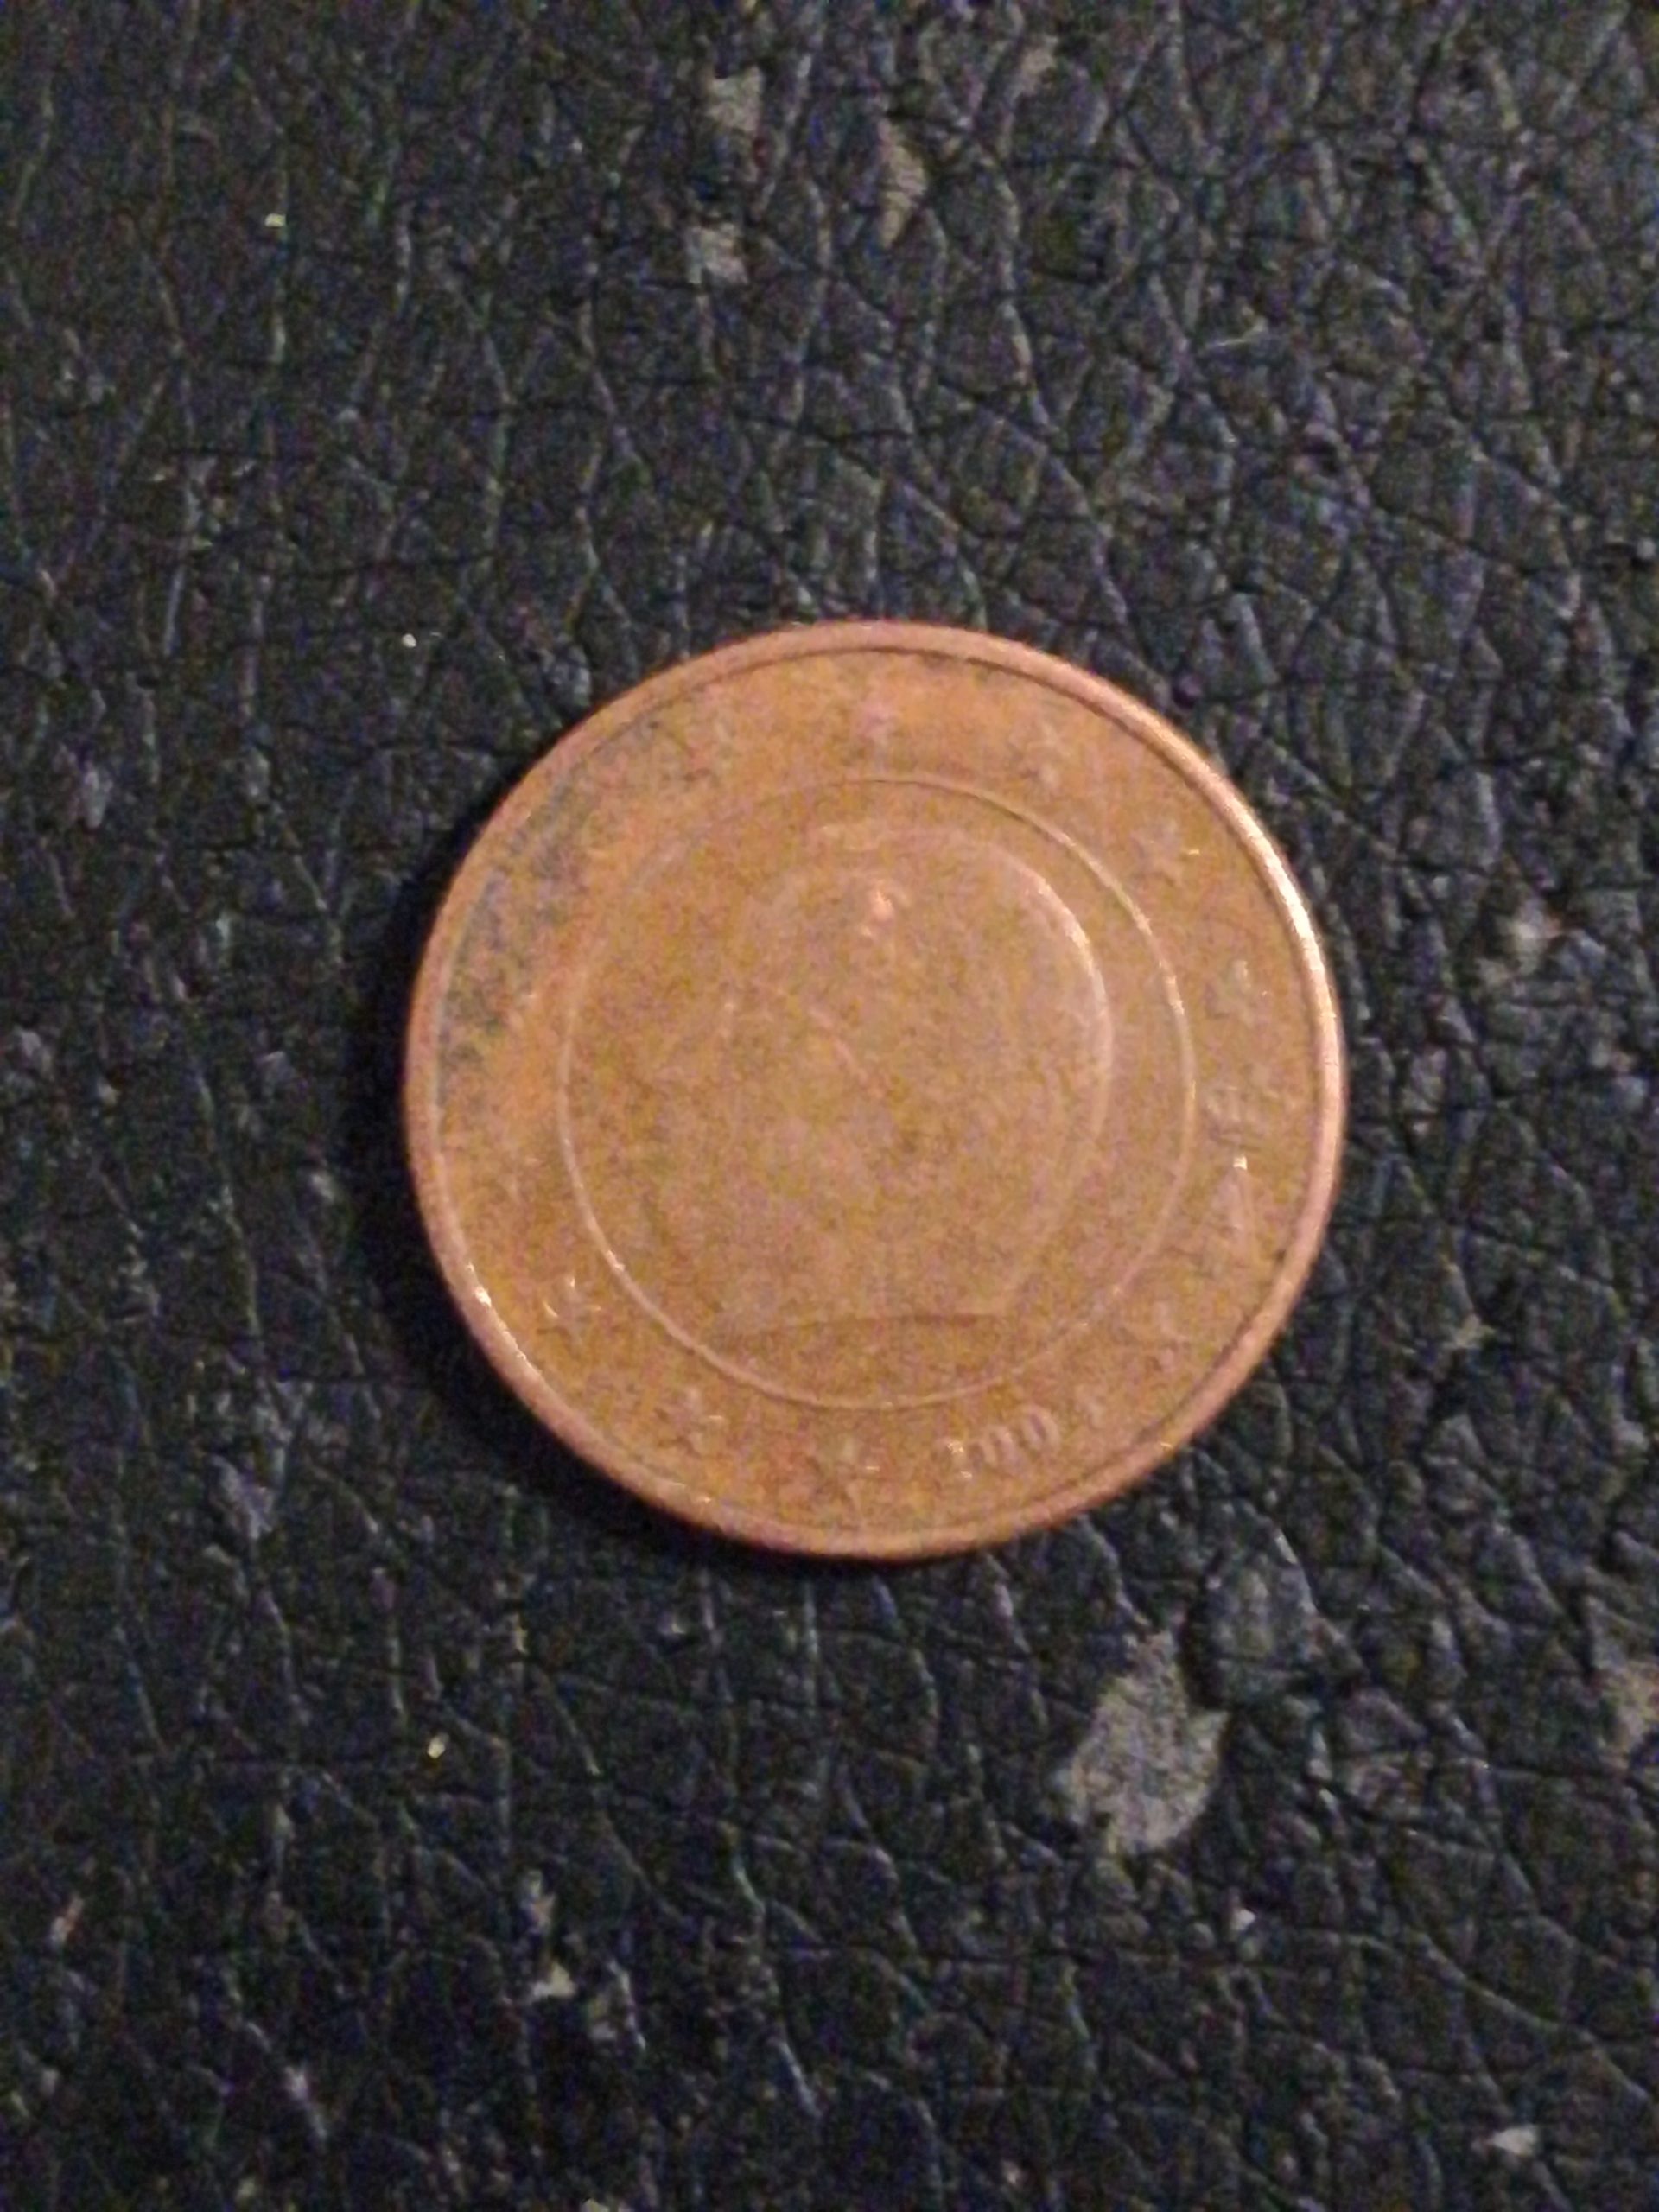 Possible error coin – Eventuelle Fehlprägung auf 1Cent Münze?